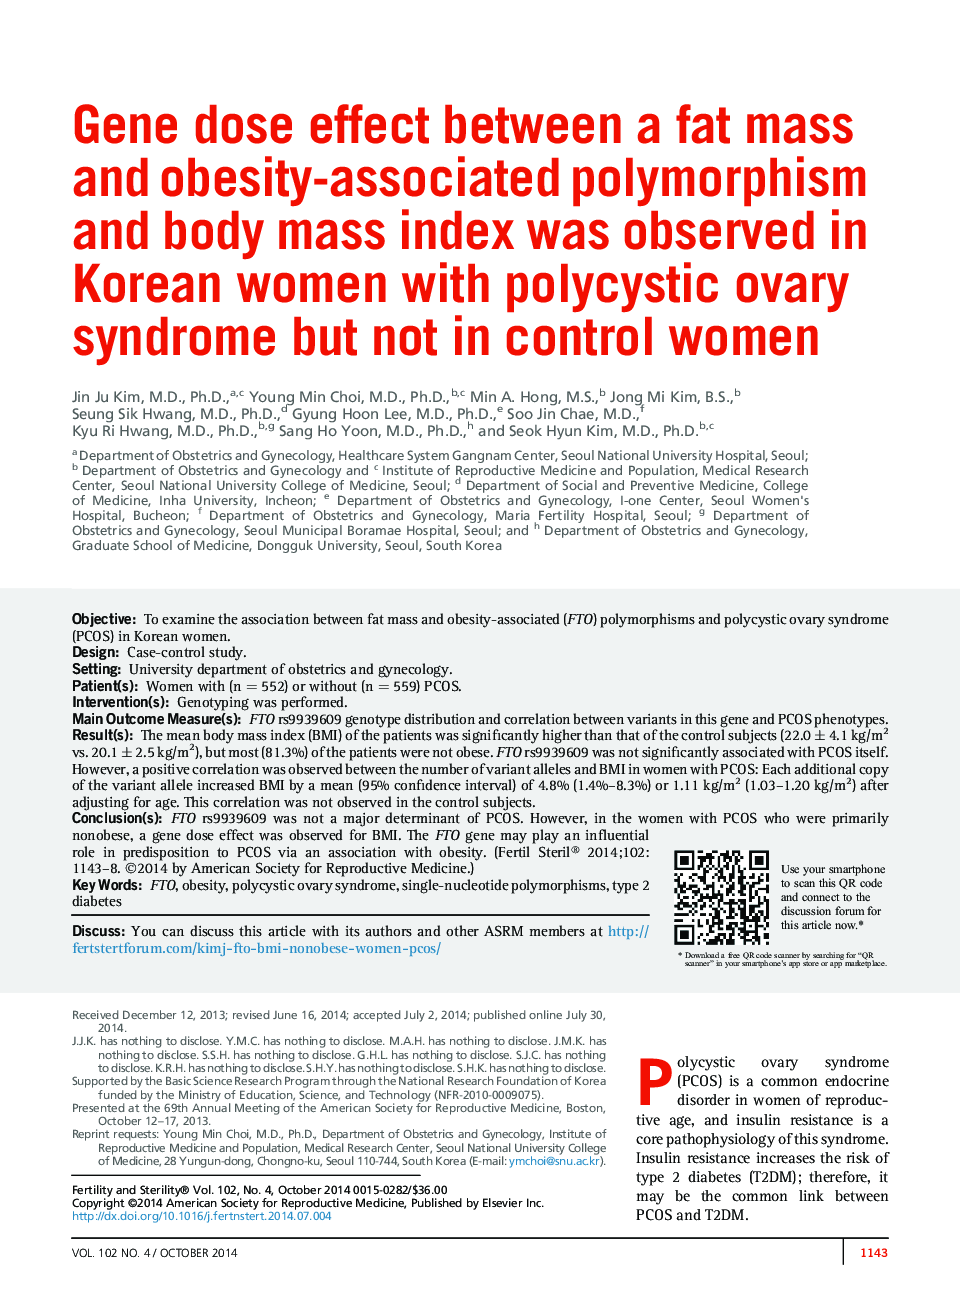 اثر دوز ژنی بین توده چربی و پلی مورفیسم همراه با چاقی و شاخص توده بدنی در زنان کره ای با سندرم تخمدان پلی کیستیک مشاهده شد، اما در زنان کنترل نشده 